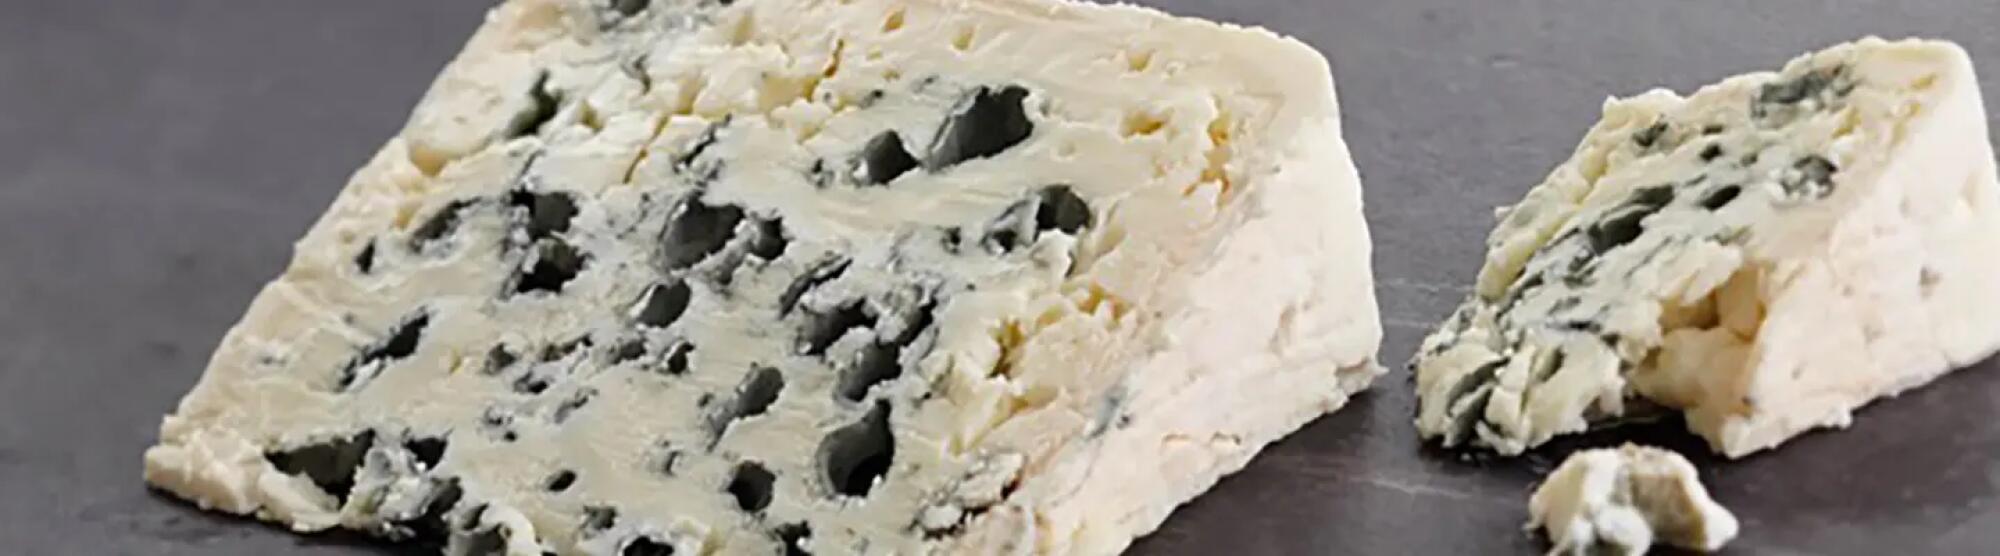 LA02_lrart-de-couper-le-fromage-de-marco-parenti